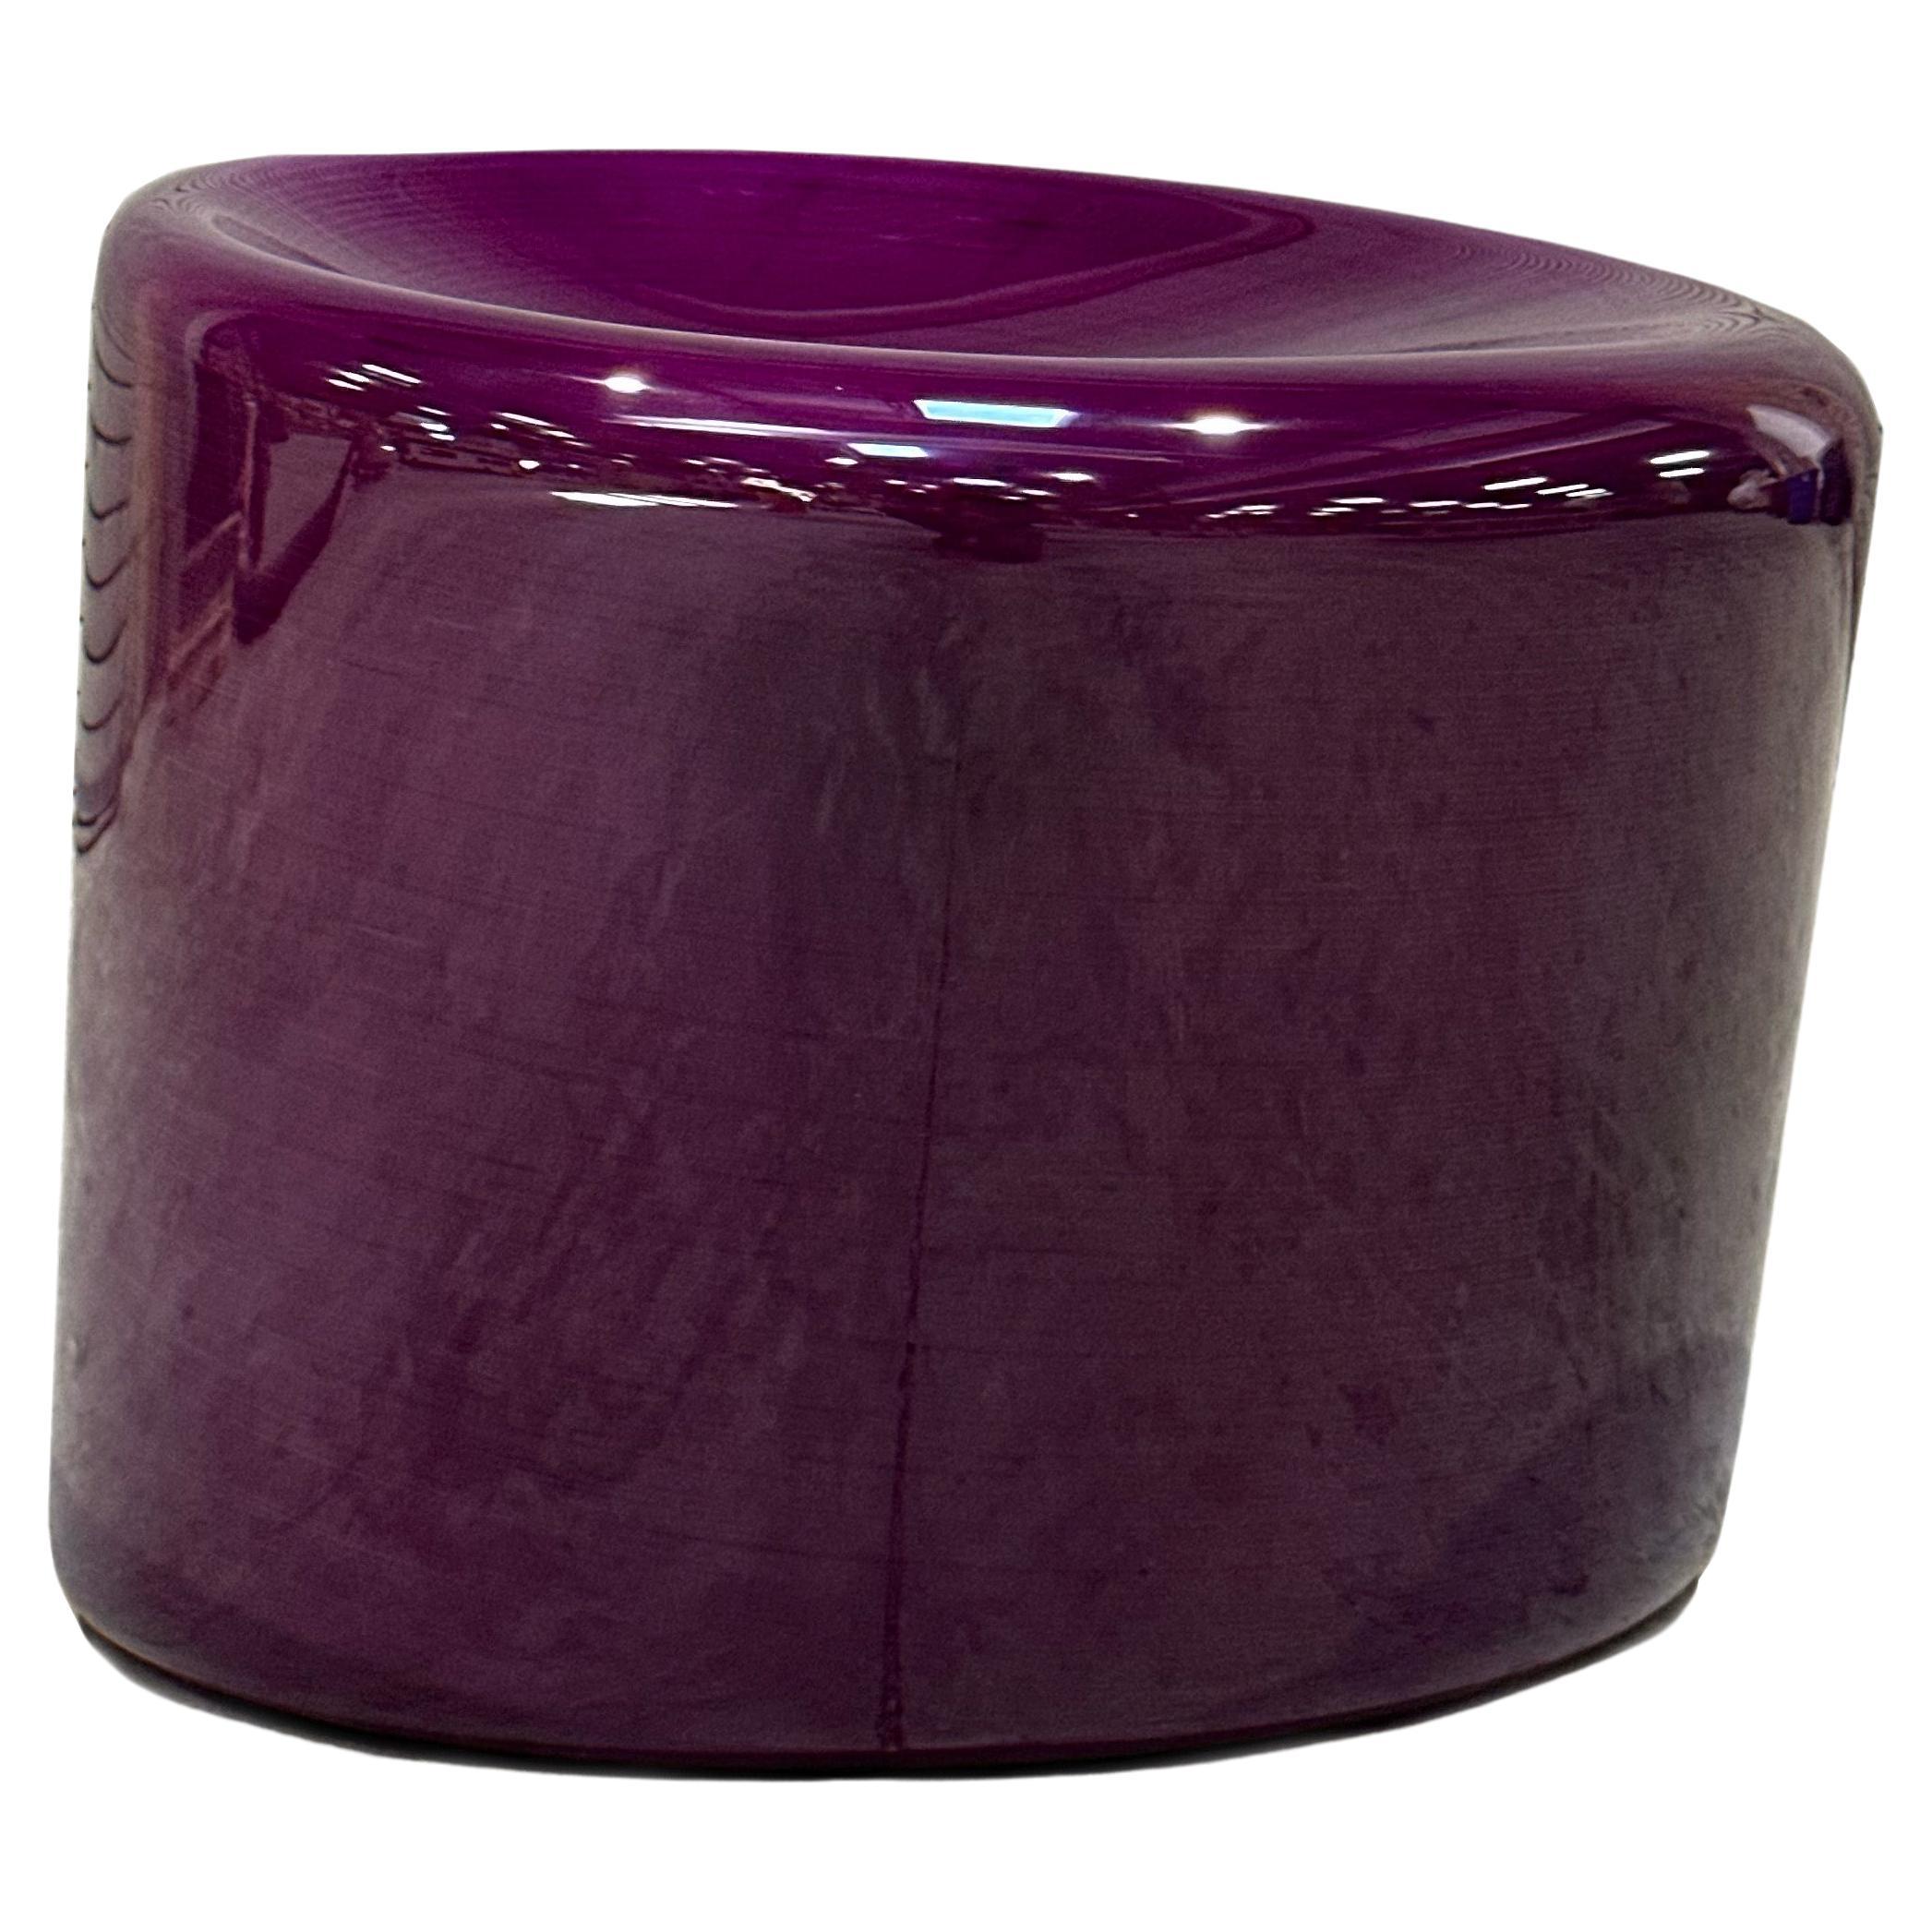 Siège empilable violet Timbur REP de Tuleste Factory